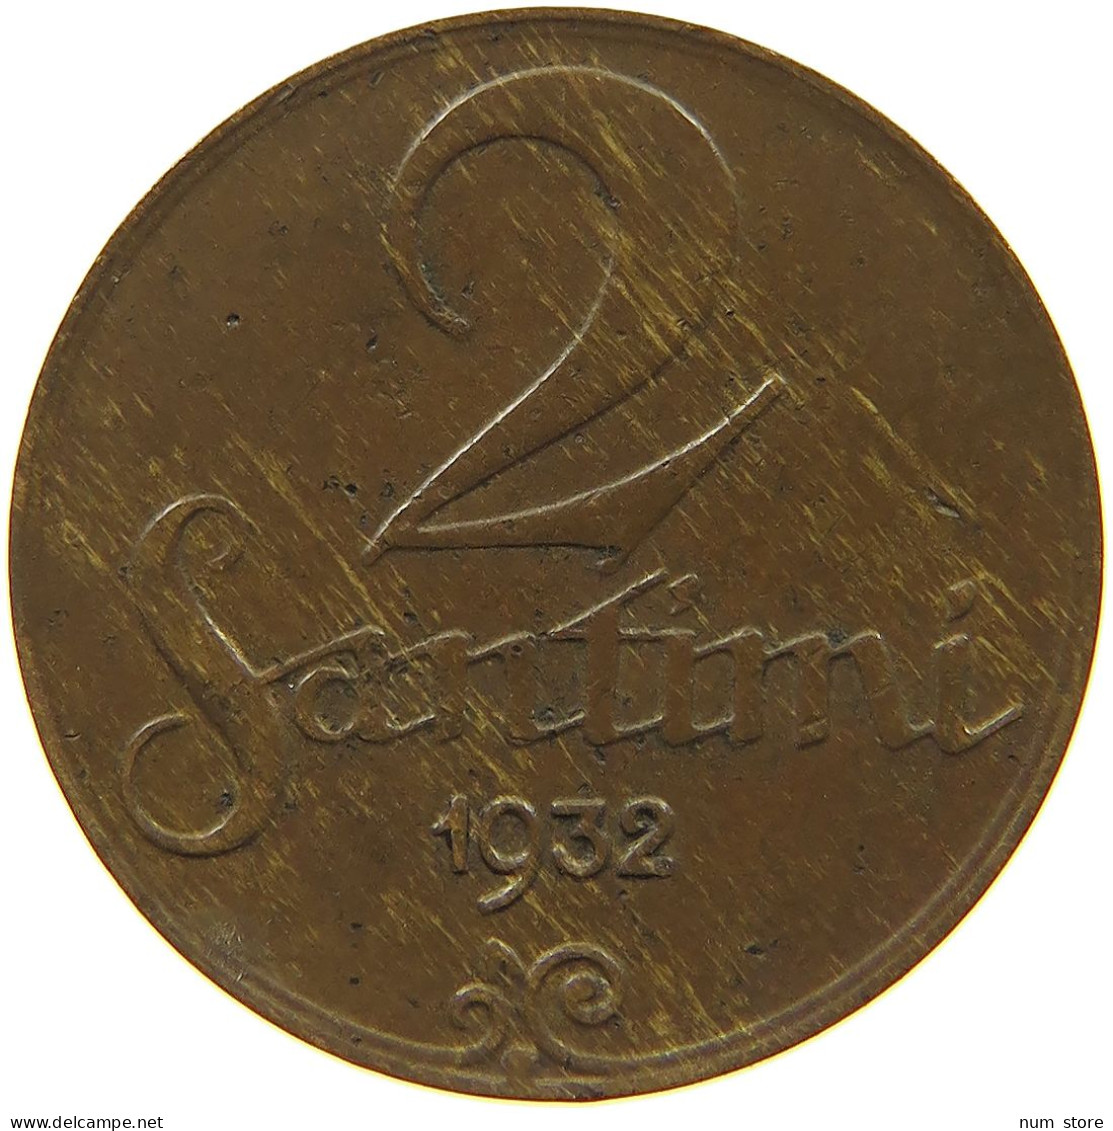 LATVIA 2 SANTIMI 1932  #c011 0205 - Latvia